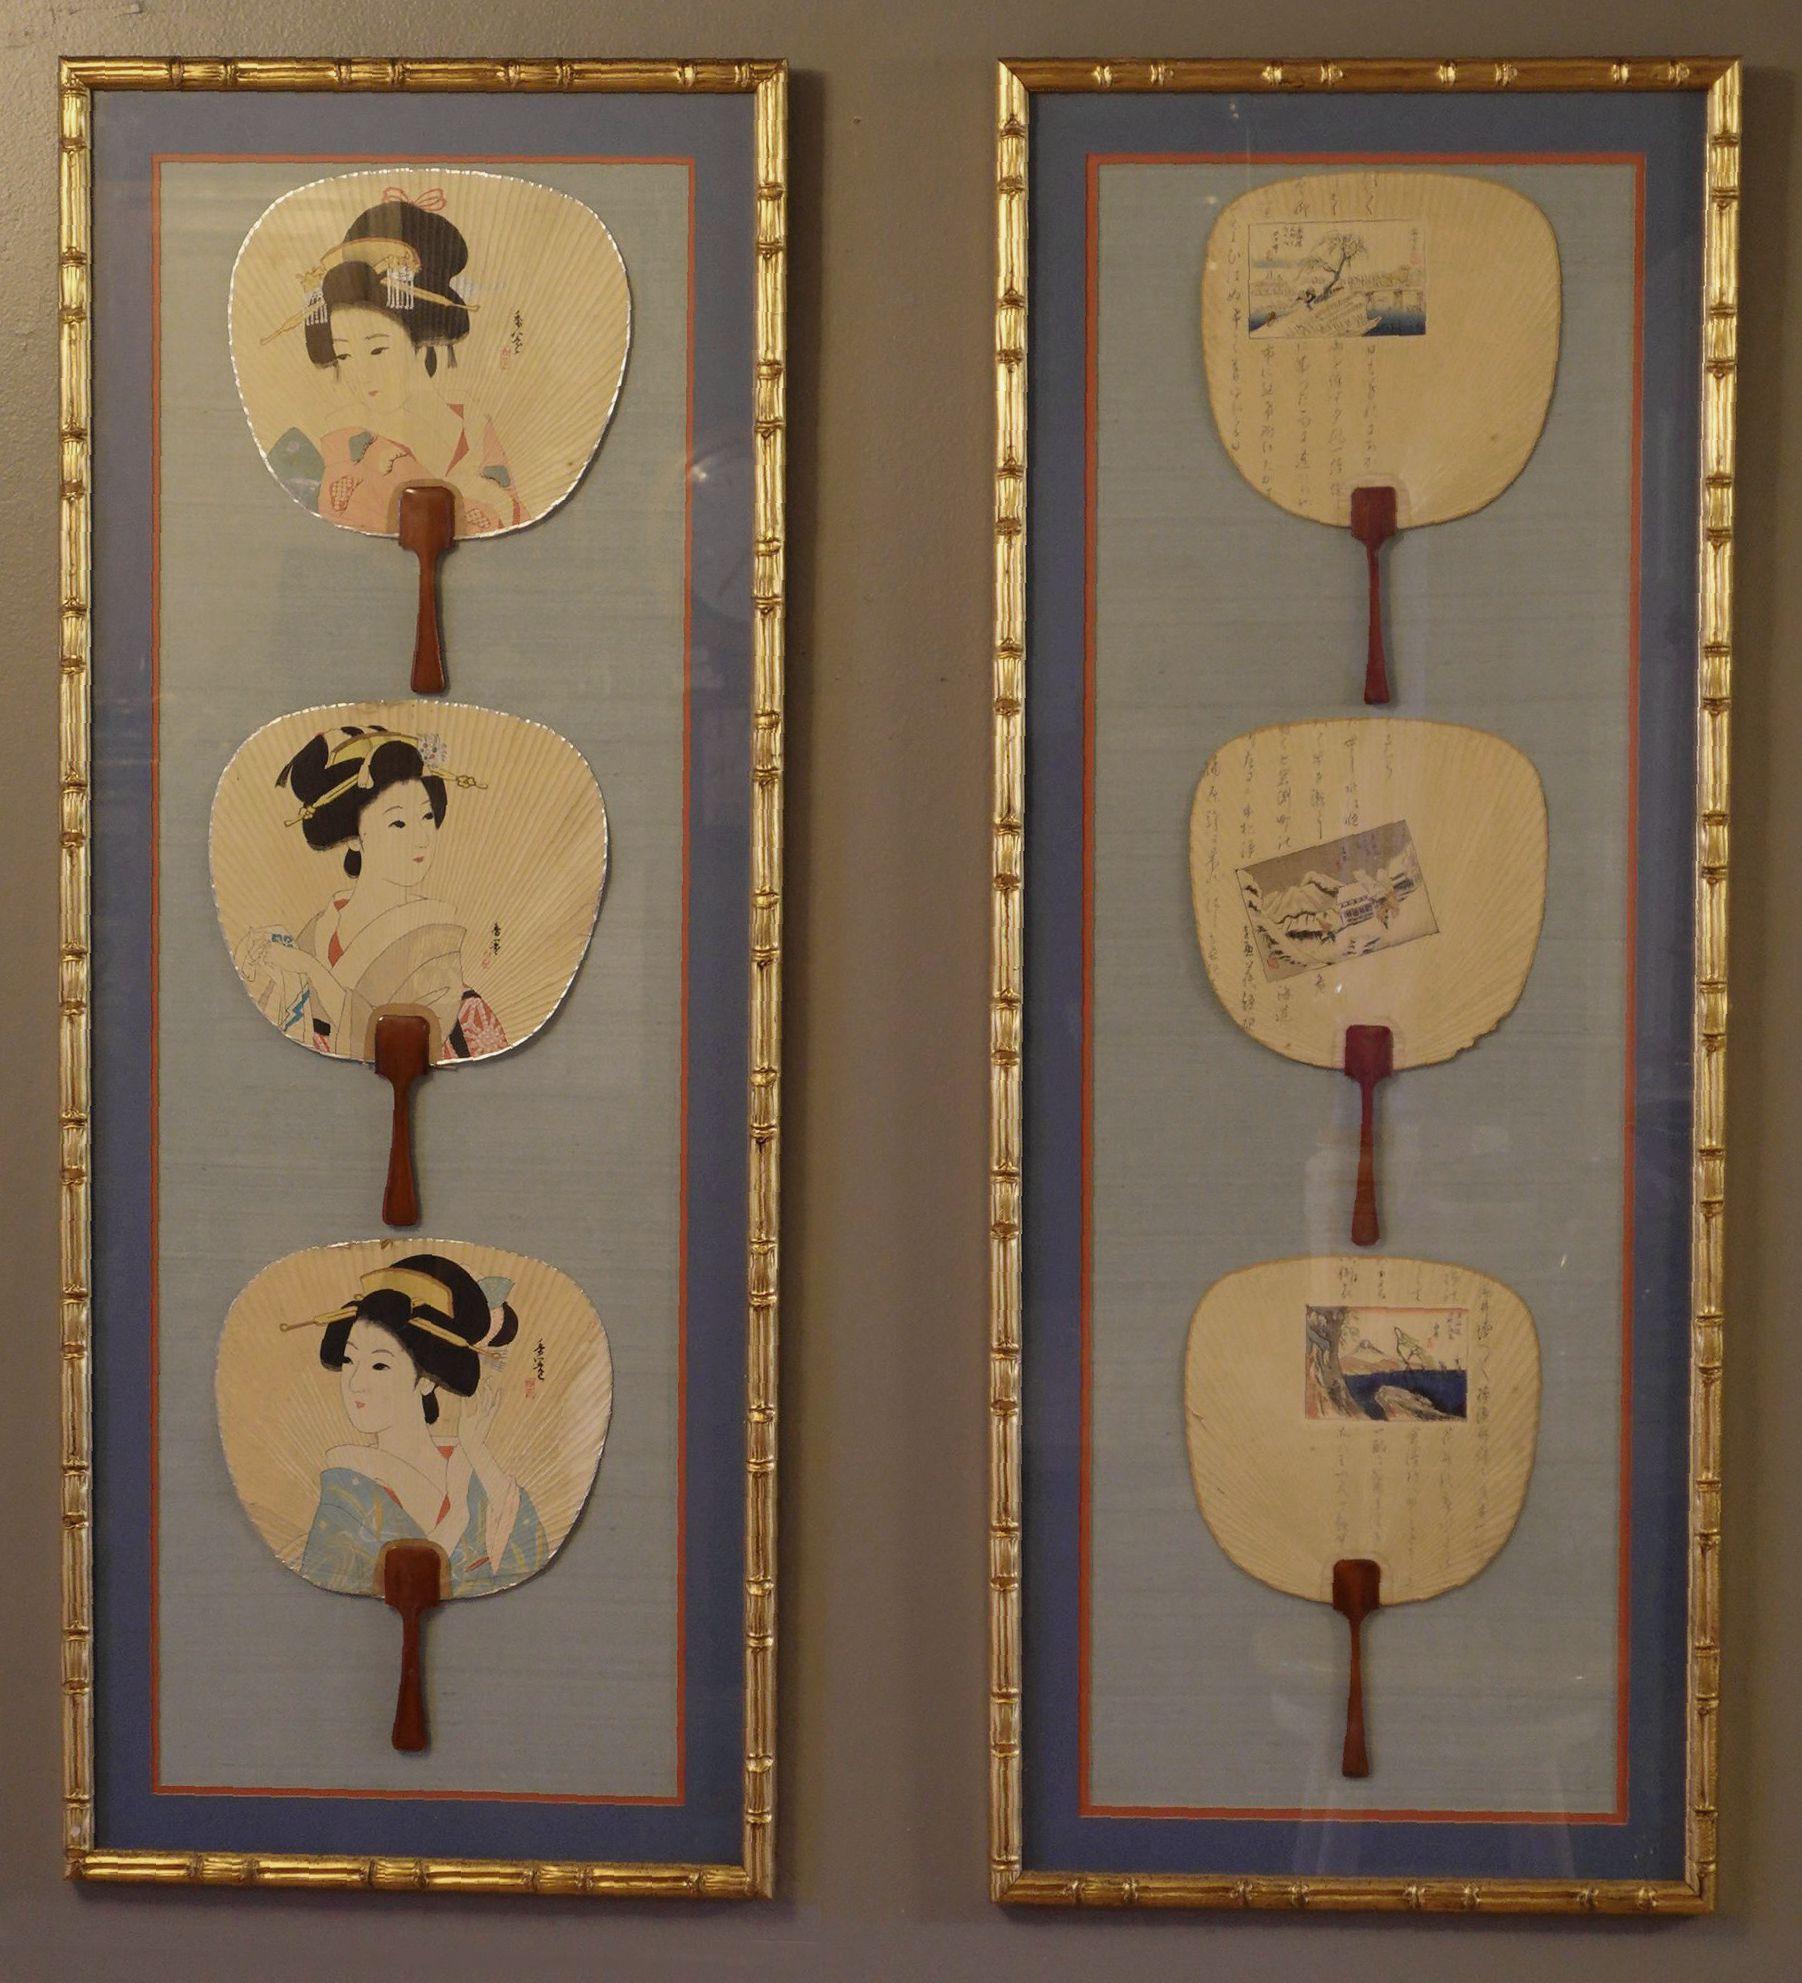 Antike gerahmte japanische Seidenfächer aus dem 19. Jahrhundert, bestehend aus zwei attraktiv gerahmten japanischen Seidenfächern, eine Gruppe mit 3 Geishas, die andere szenisch mit 3 Inschriften mit 3 Gemälden von Utagawa Hiroshige, in passendem